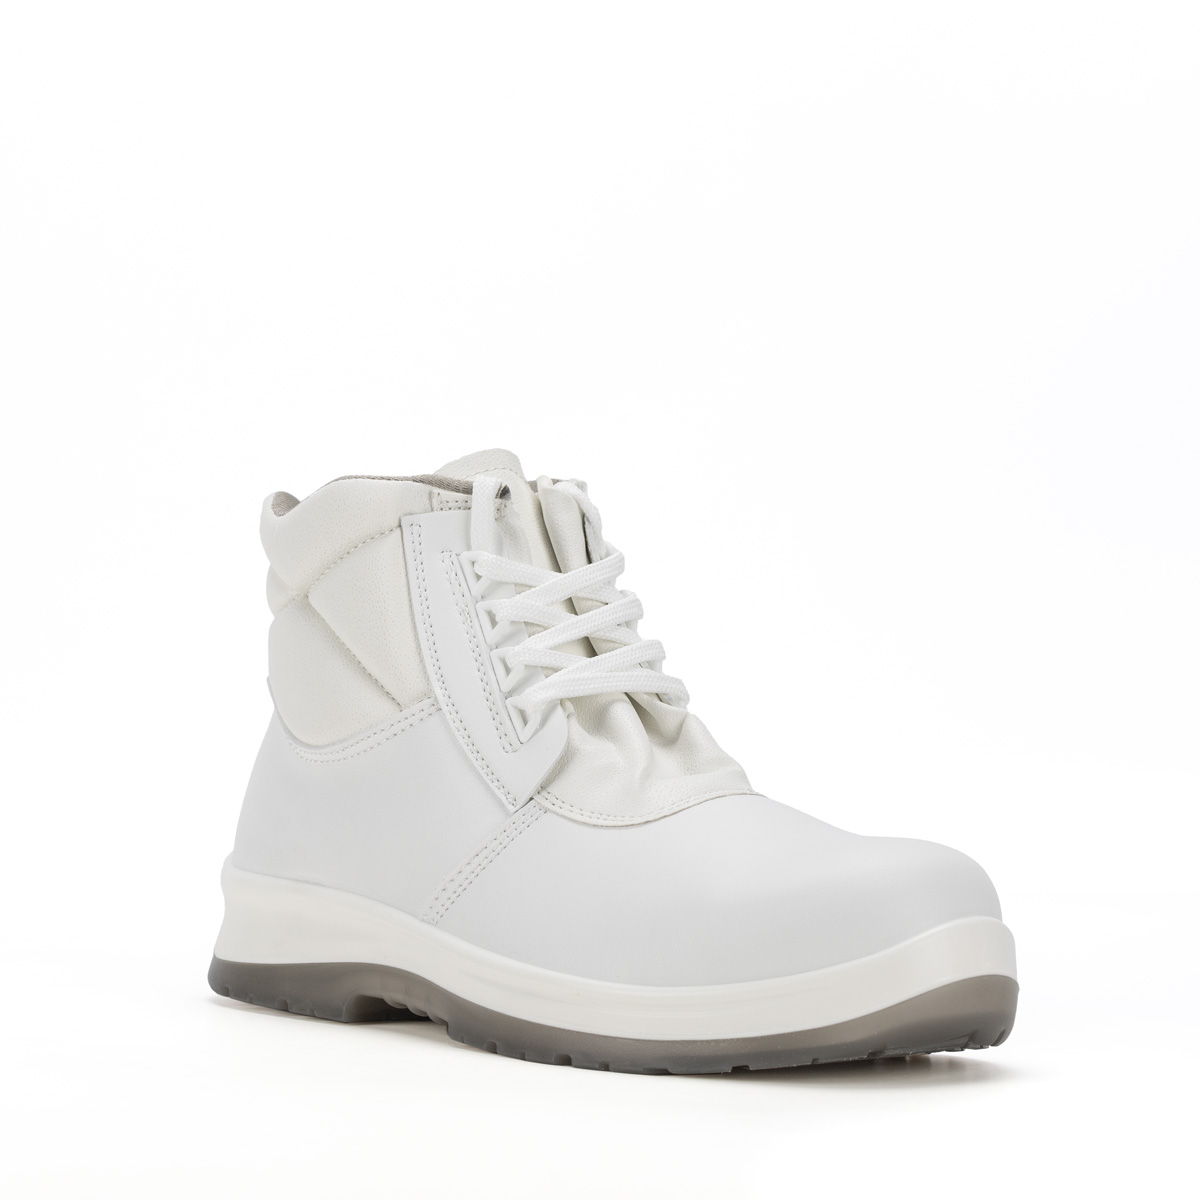 Crystal BERGAMO - Ankle boot con classe di protezione S2 SRC - Codice  modello 86206-00 Sixton Peak Safety Shoes